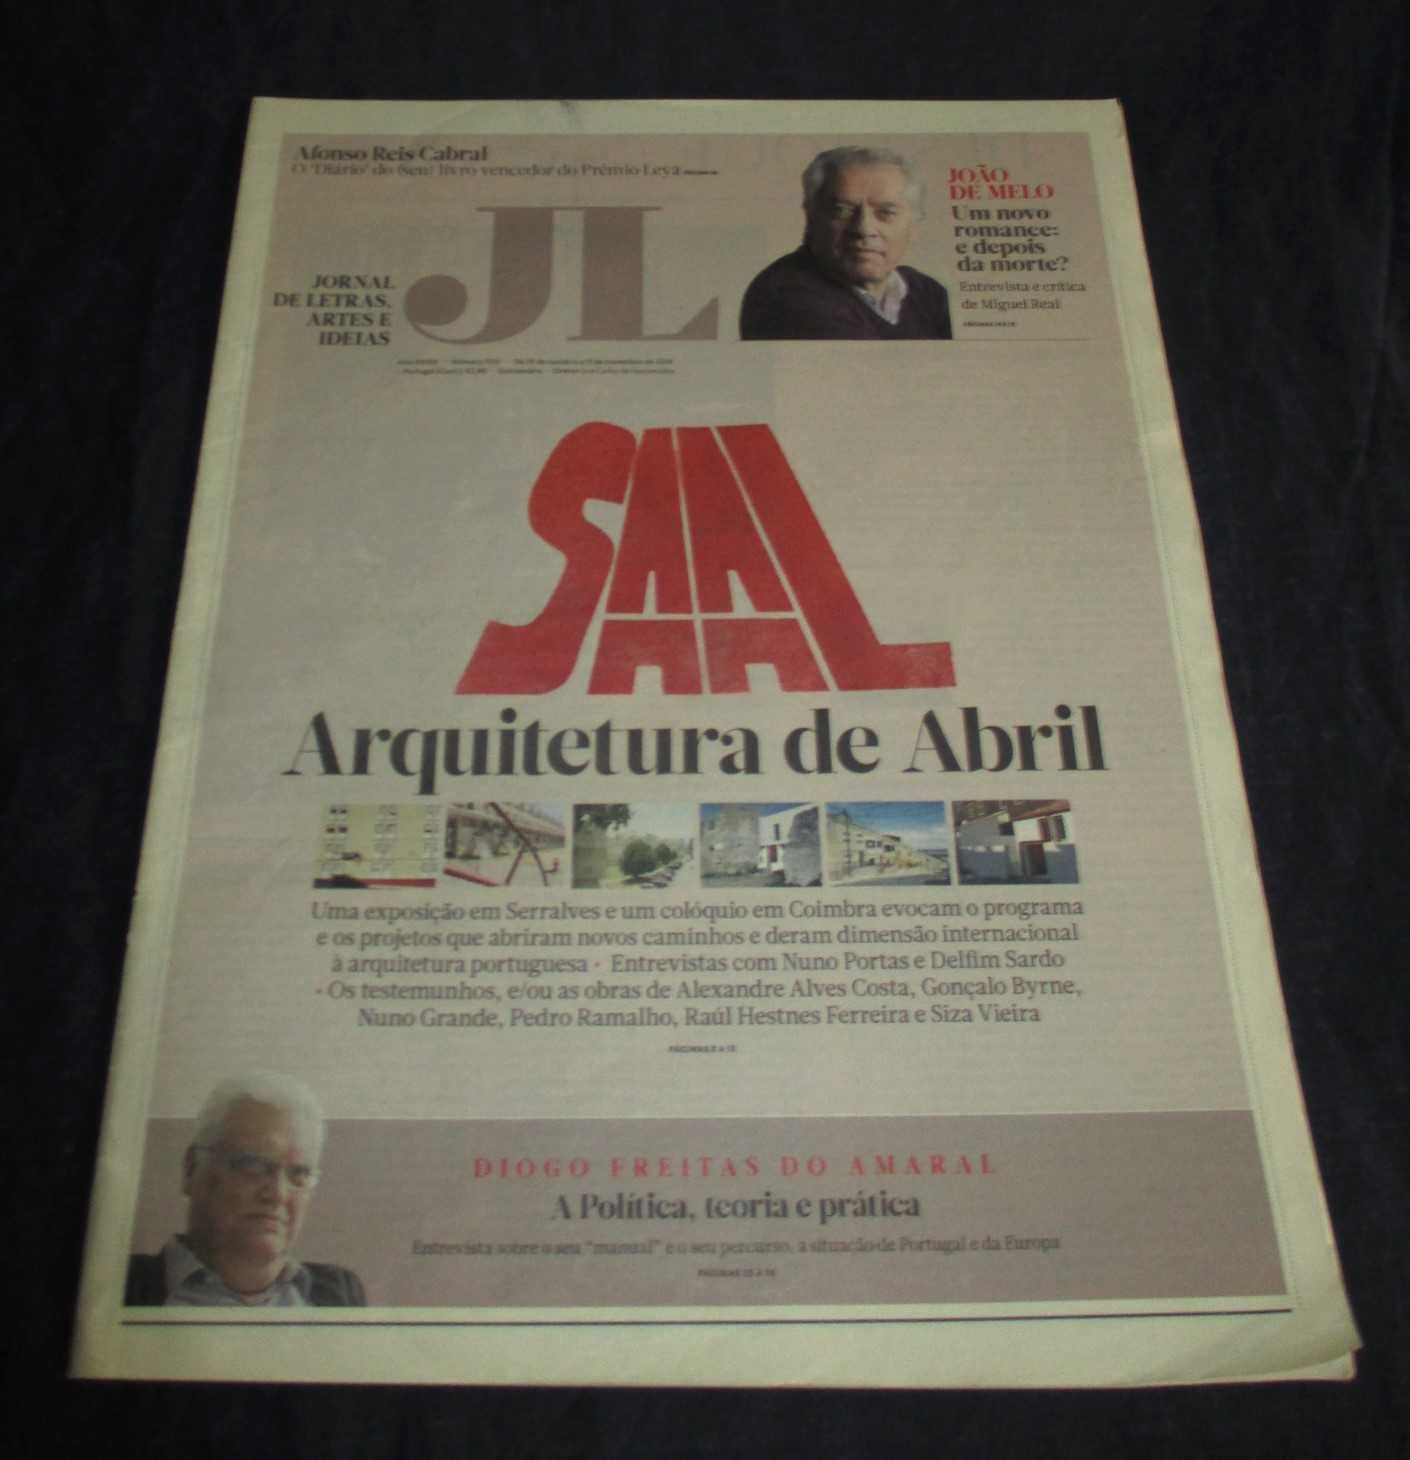 Jornal de Letras Artes e Ideias SAAL Arquitectura de Abril